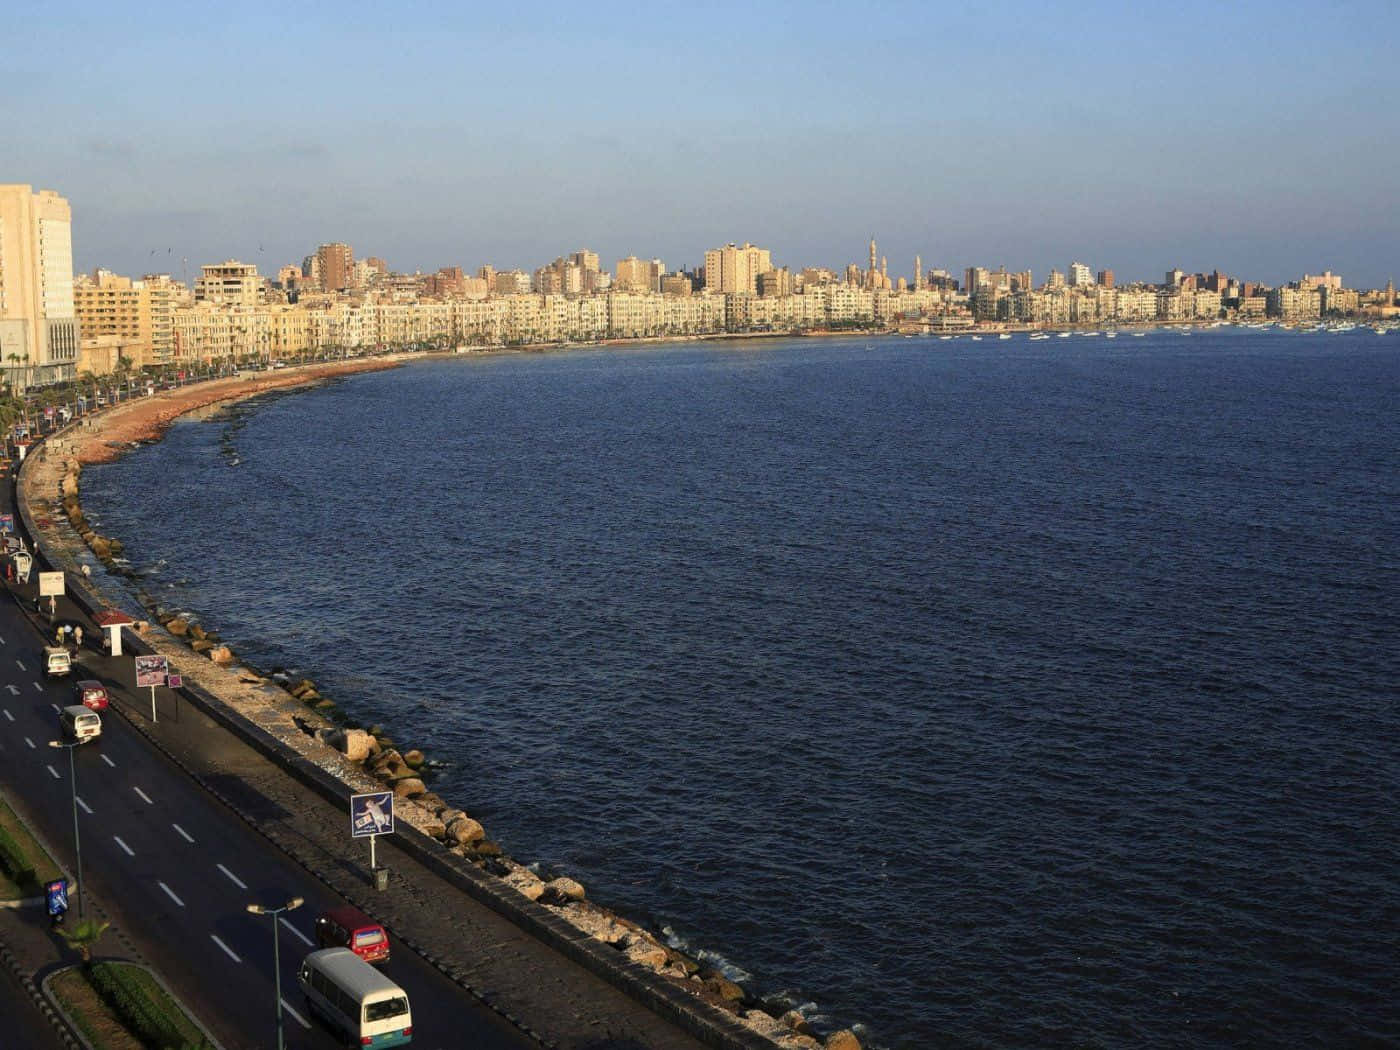 Laimpresionante Ciudad Portuaria De Alejandría, Egipto.